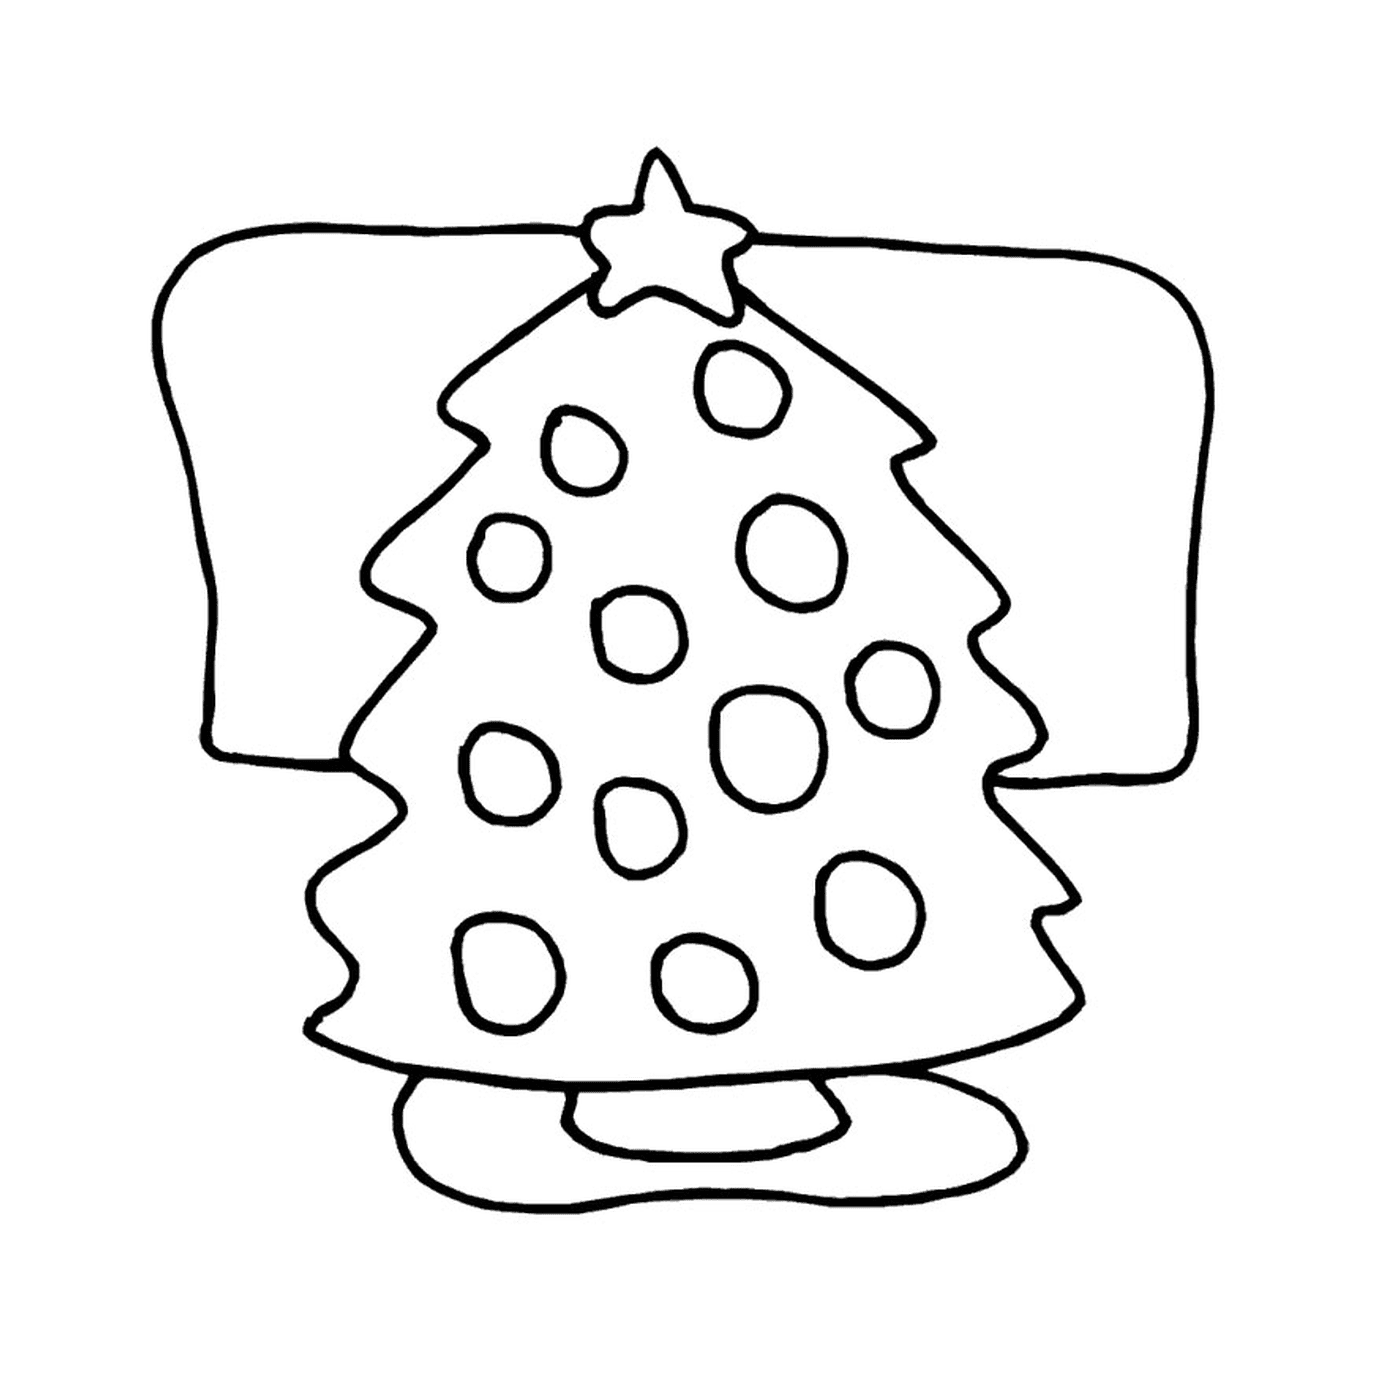  Ein Weihnachtsbaum online 